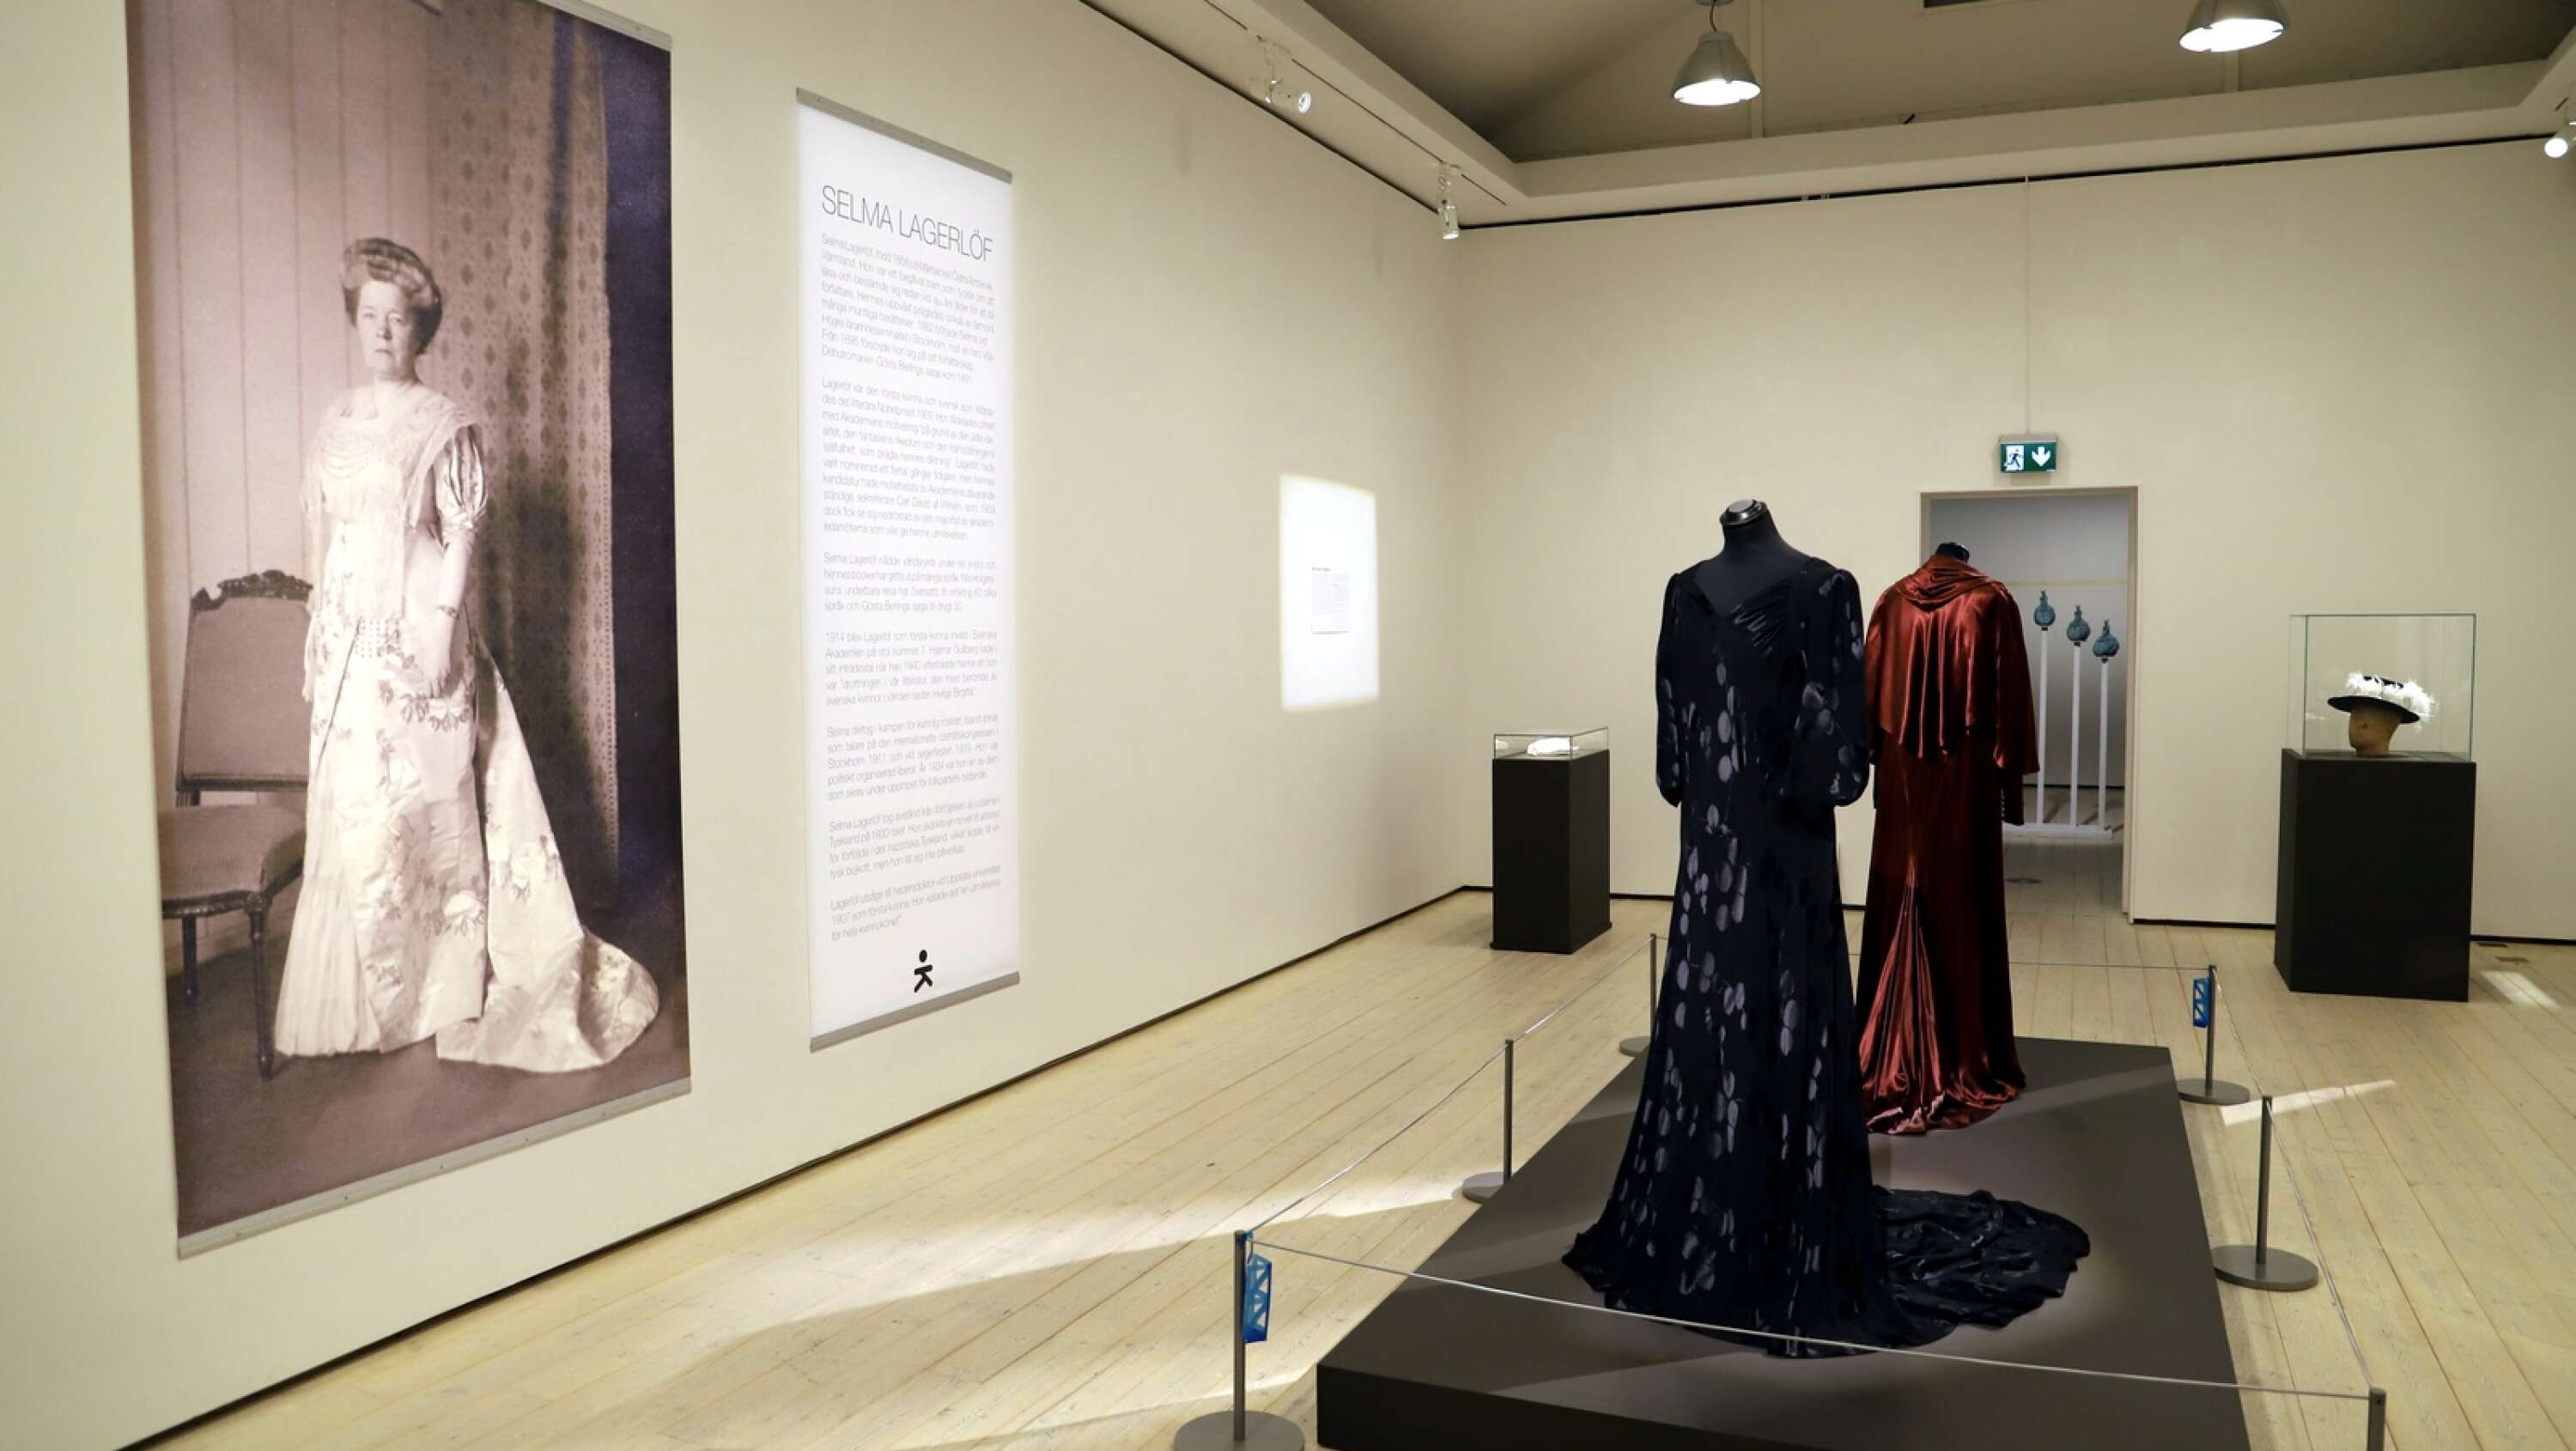 Kristinehamns konstmuseum visar utställningen Evigt stolt i eget ljus - Sara Danius och modet. Där möter Sara Danius Selma Lagerlöf.